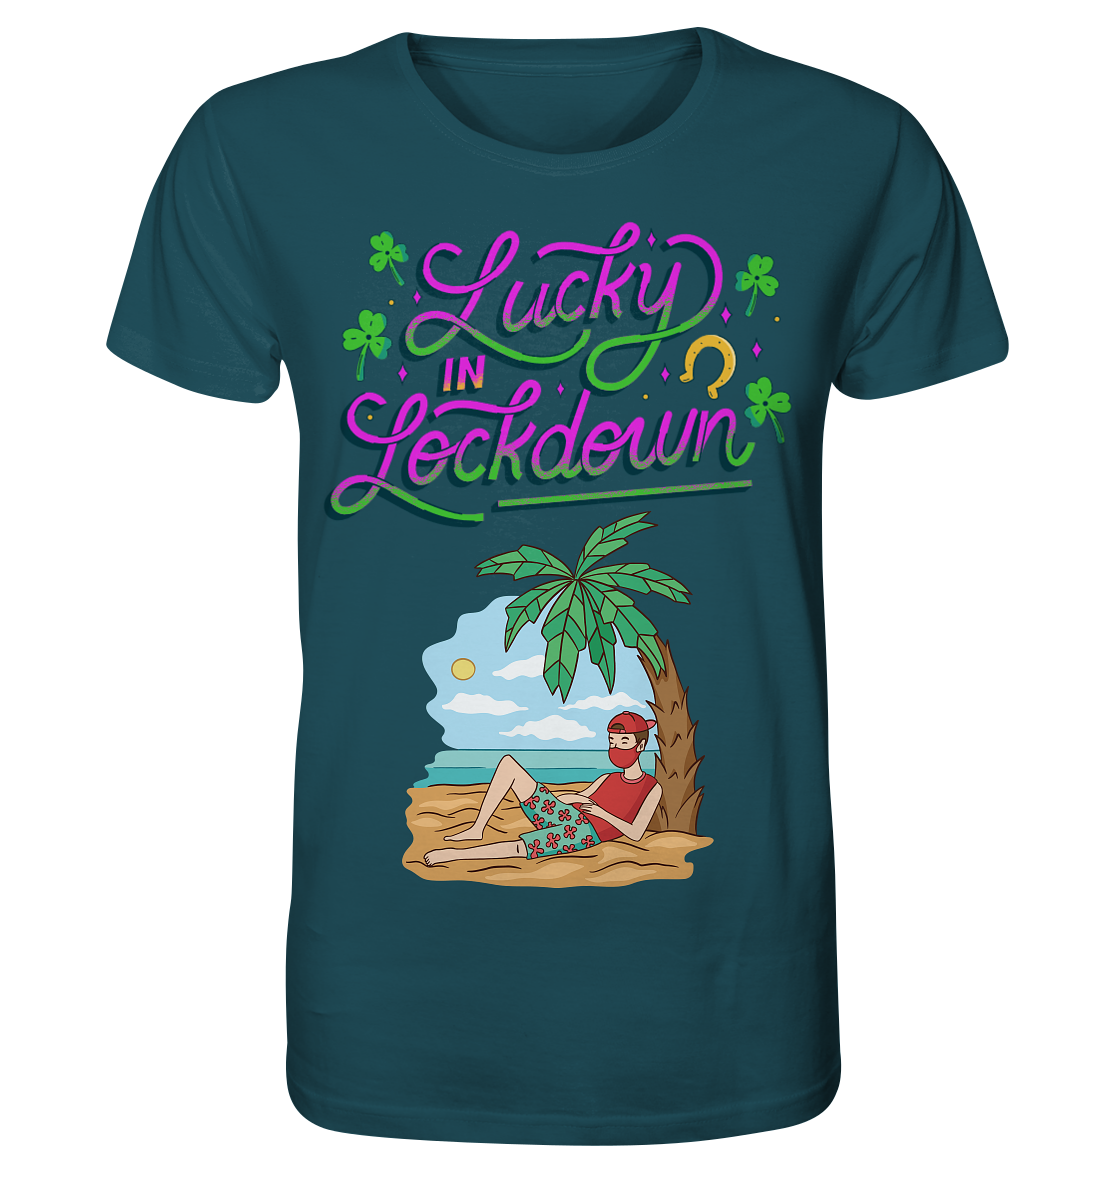 Lucky in Lockdown - Organic Shirt - Online Kaufhaus München